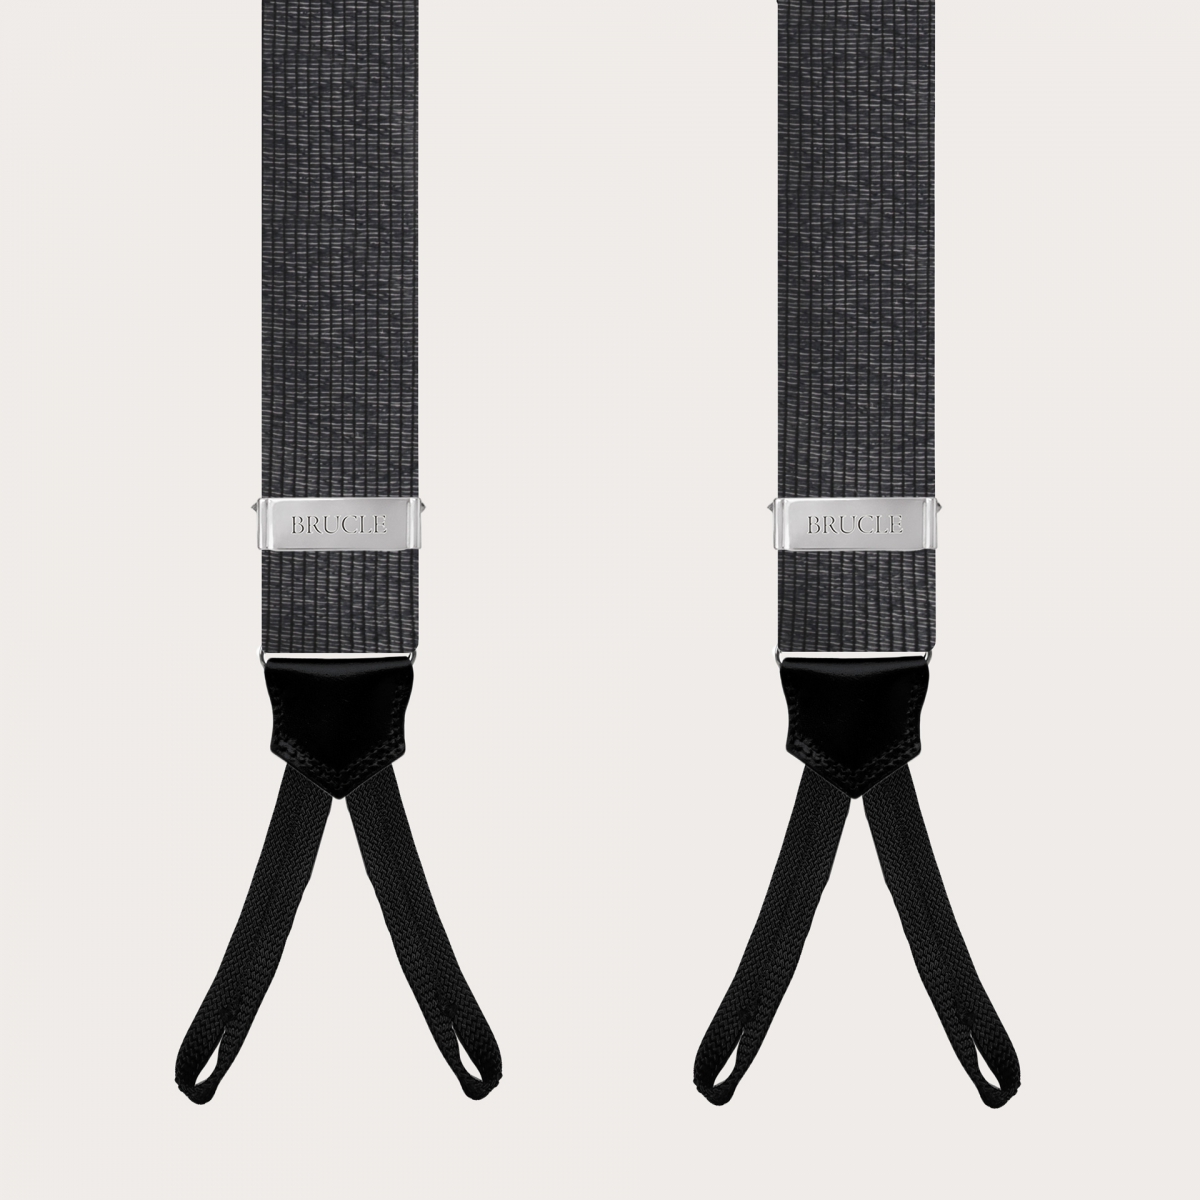 Elegante schwarze und silbermelierte Seiden-Hosenträger mit Knopflöchern